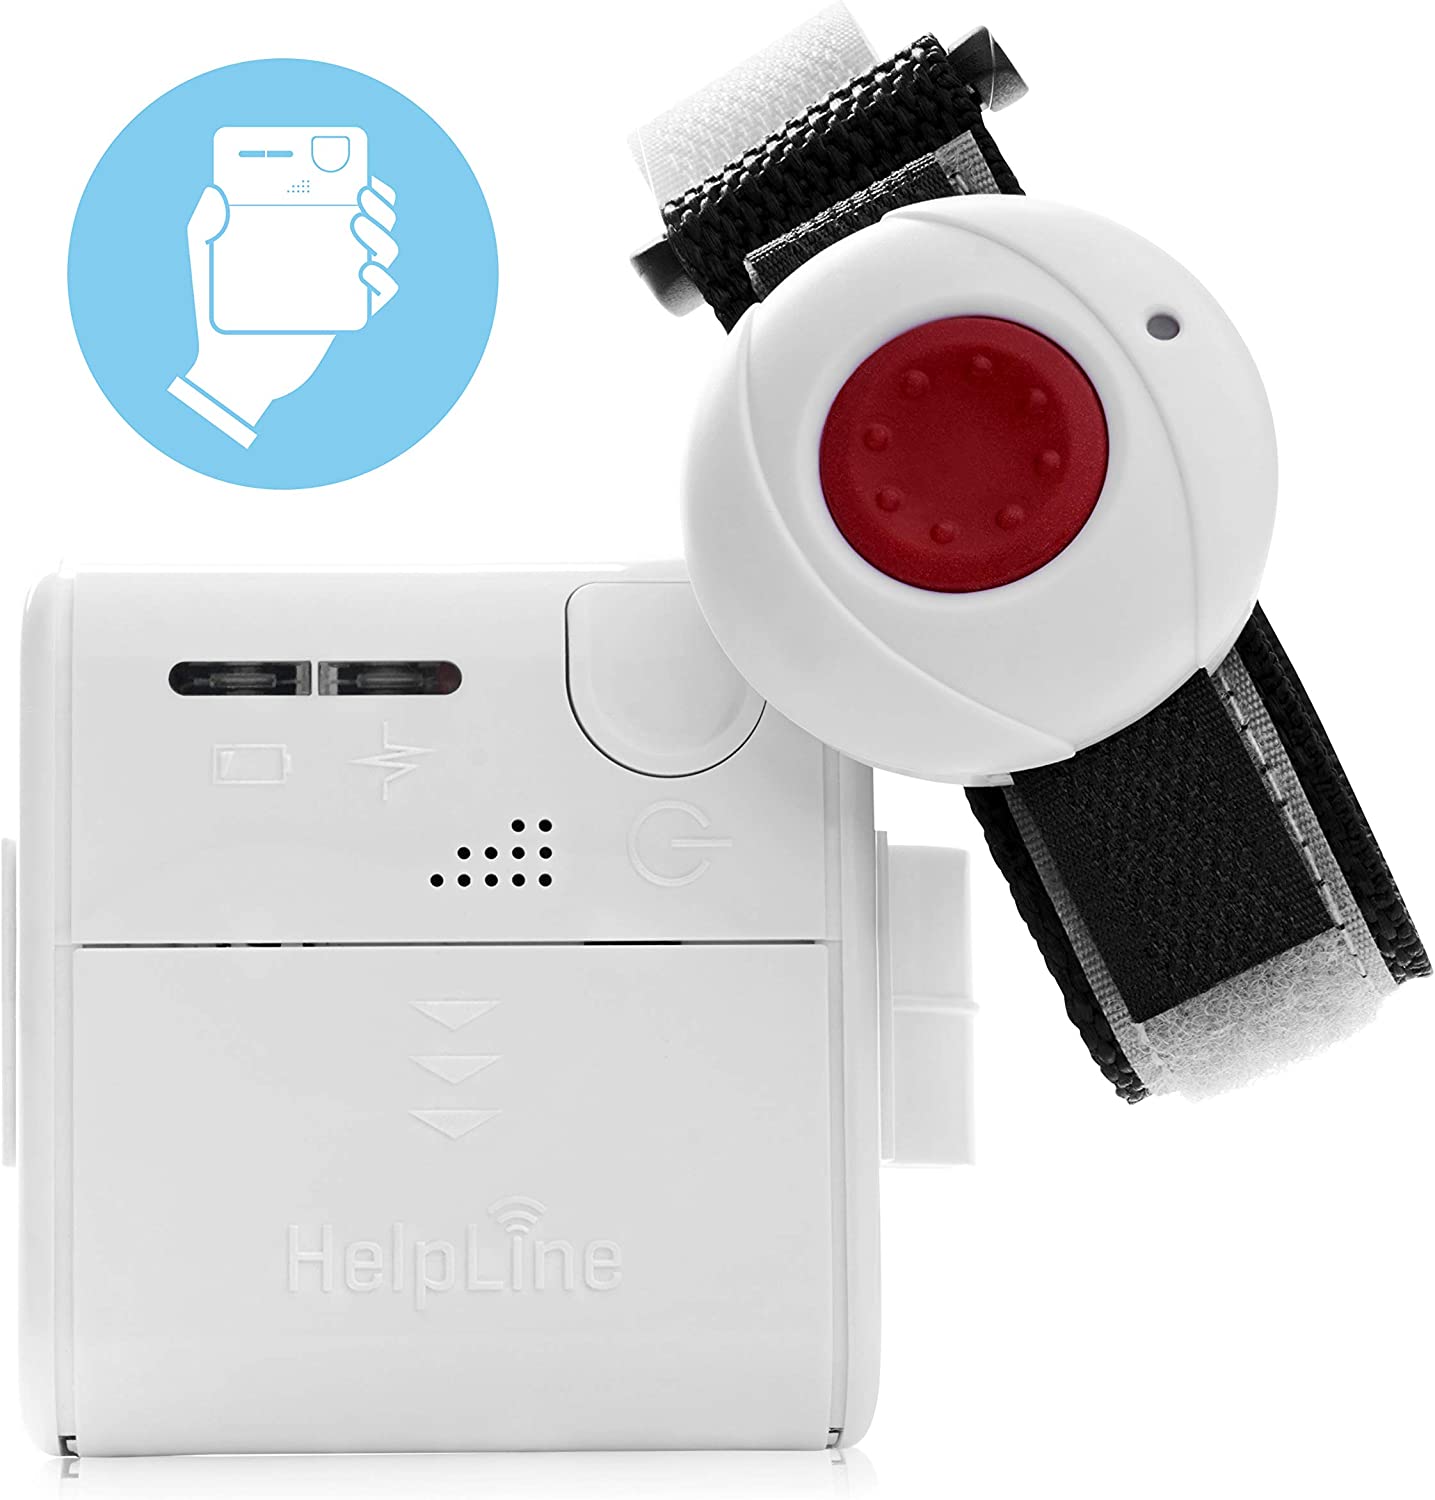 HelpLine Mini : Système d'Appel d'Urgence Domestique